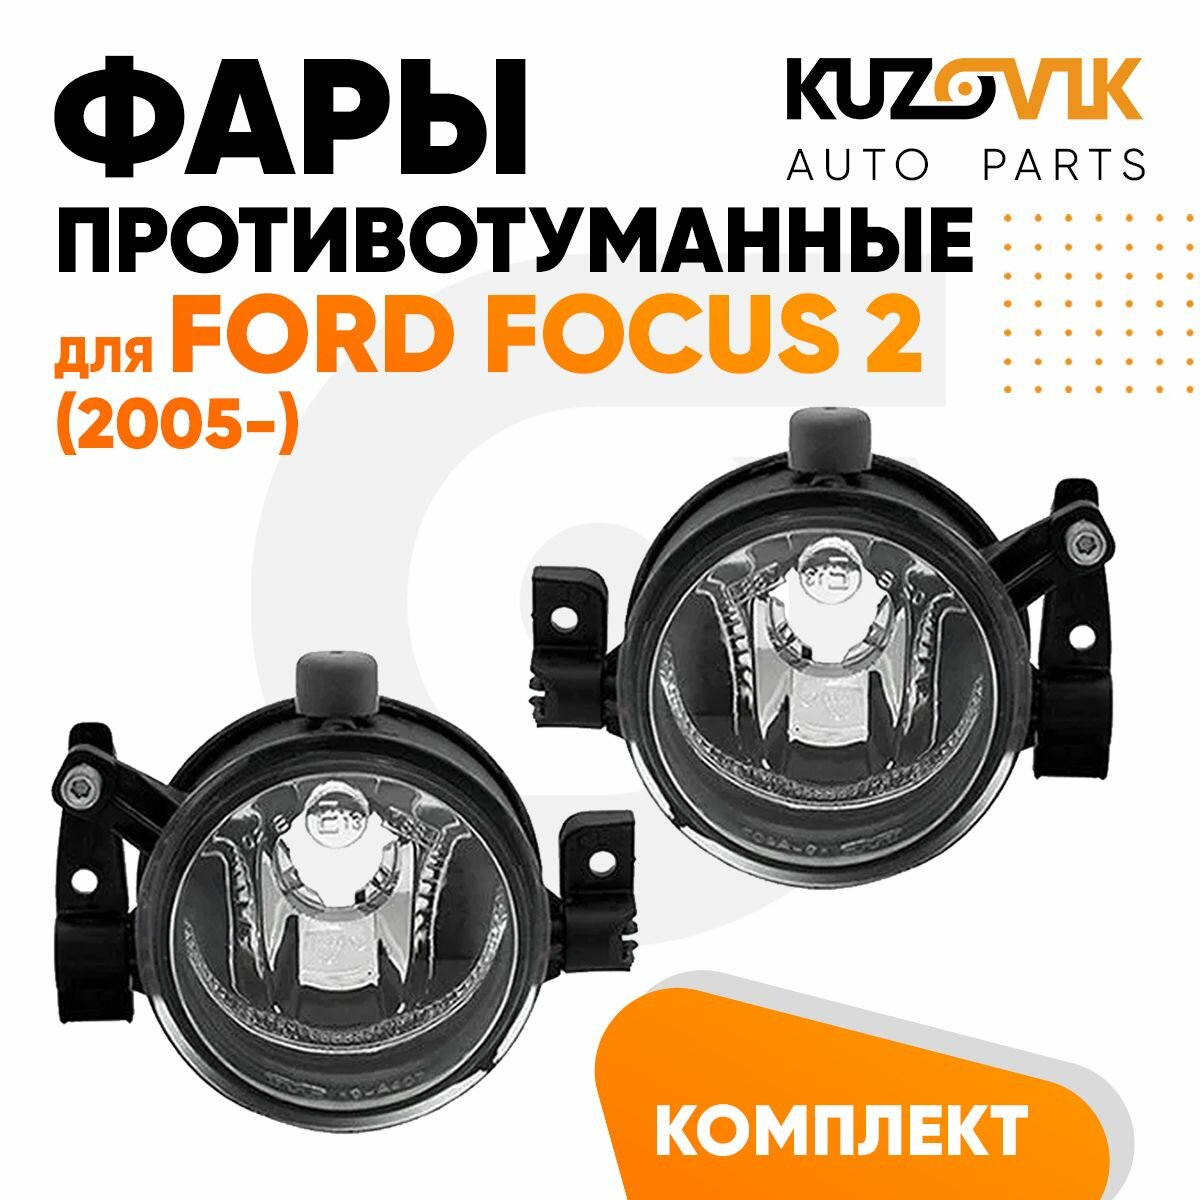 Фары противотуманные комплект для Форд Фокус Ford Focus 2 (2005-) (2 шт) туманки, ПТФ